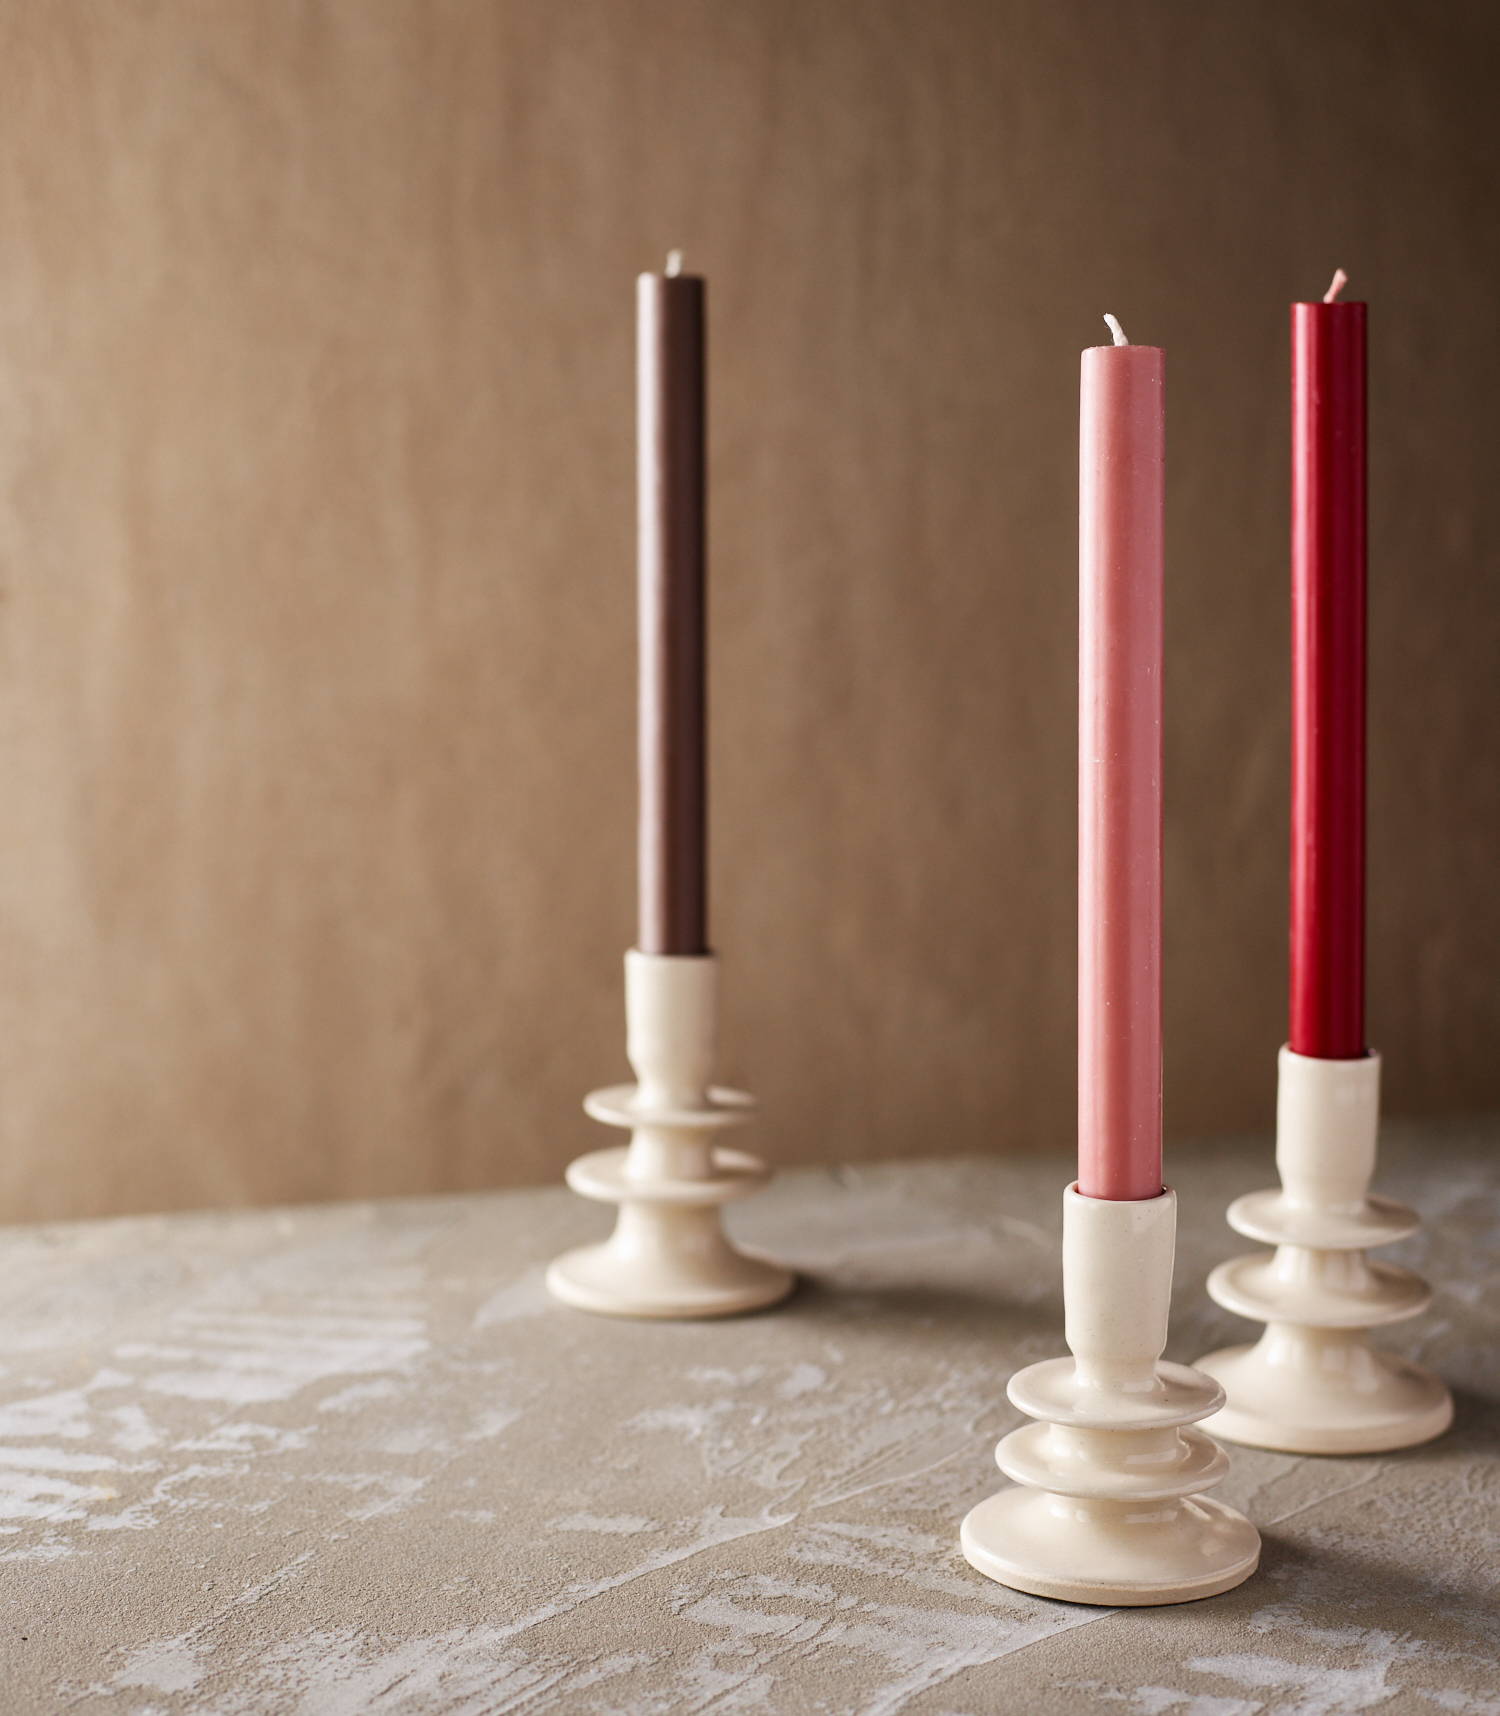 Candlesticks by Izzy Letty Ceramics